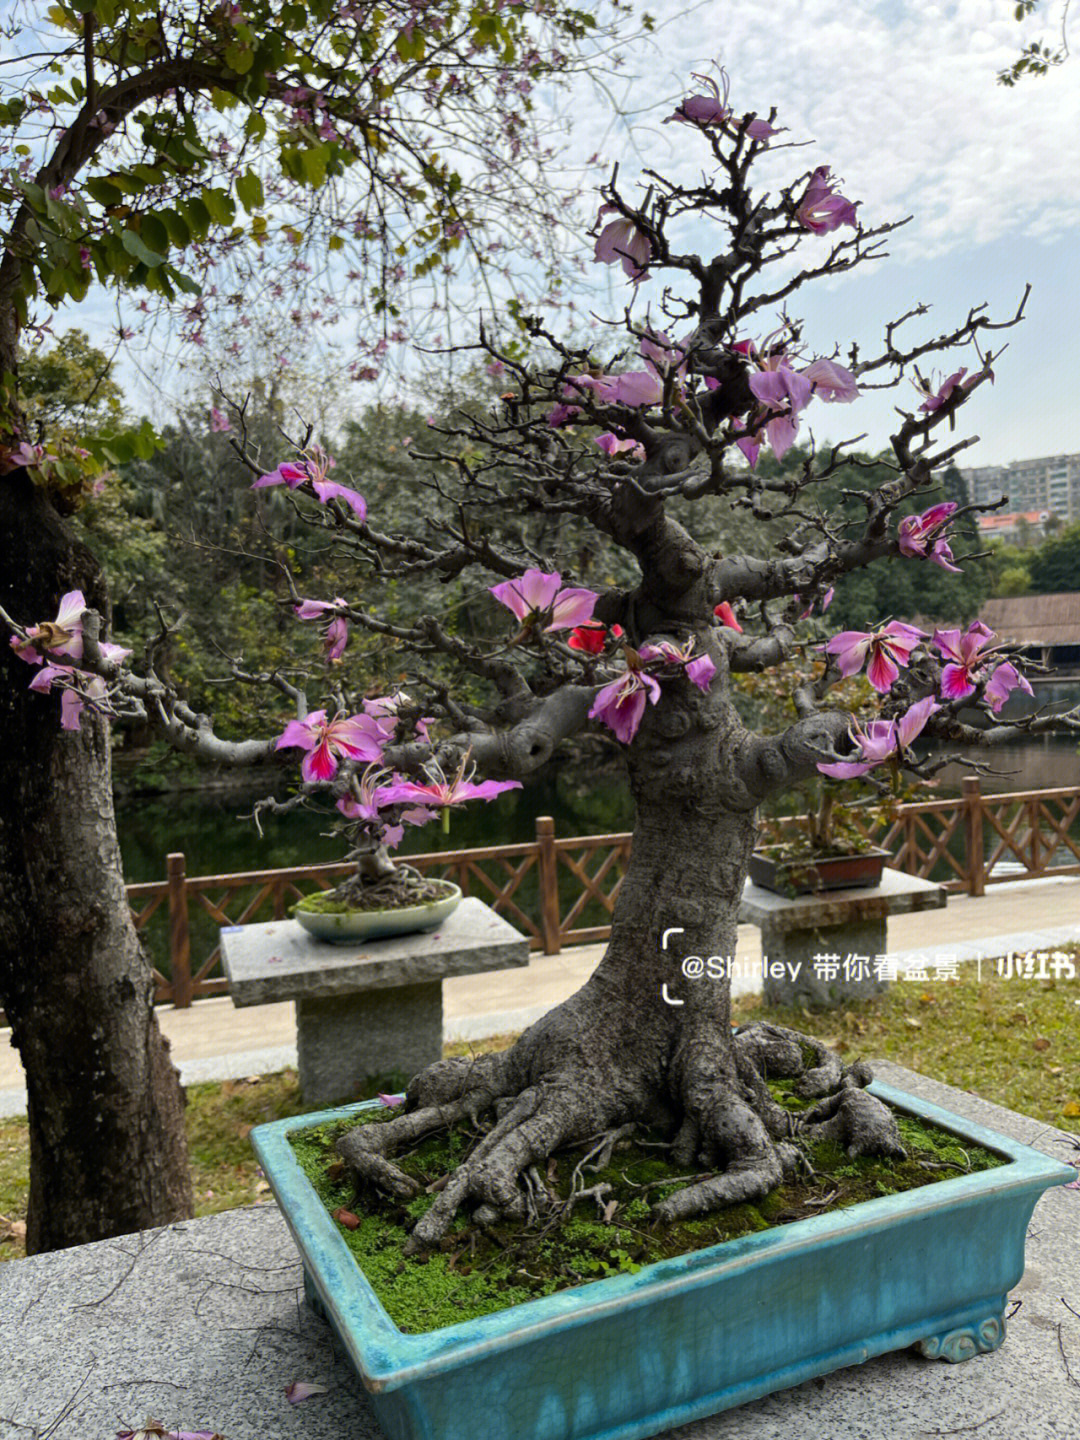 紫荆盆景制作方法图片